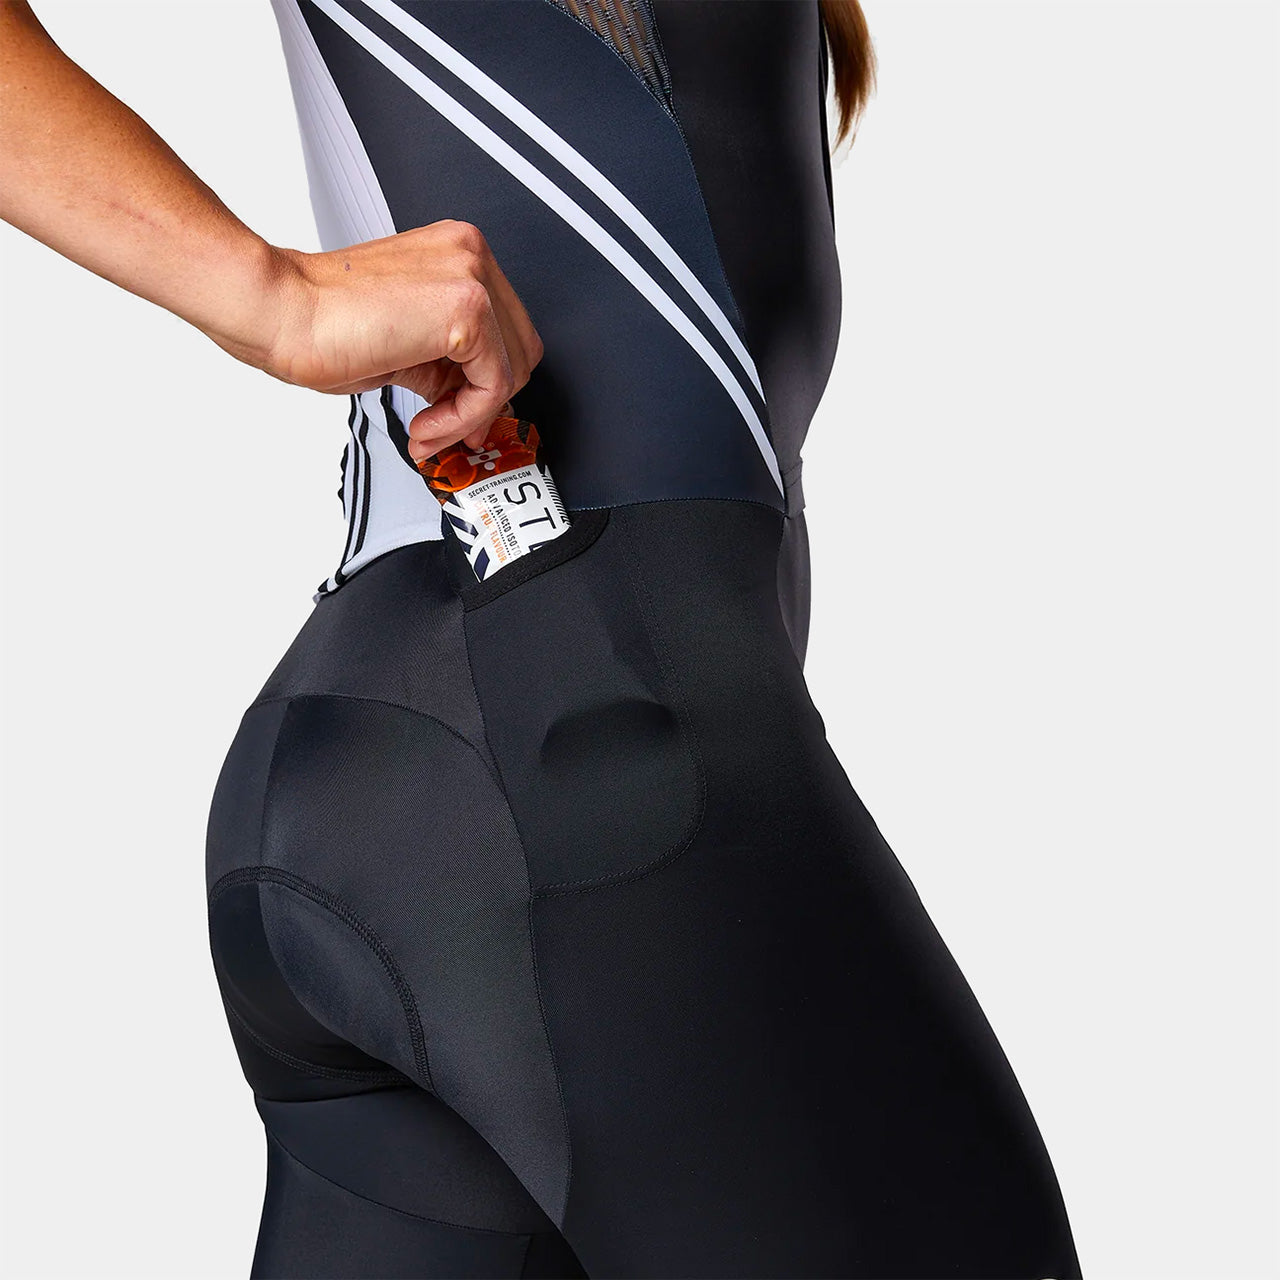 TRI-FIT EVO NEXT GEN Women's Tri Suit - Hip Gel Pocket